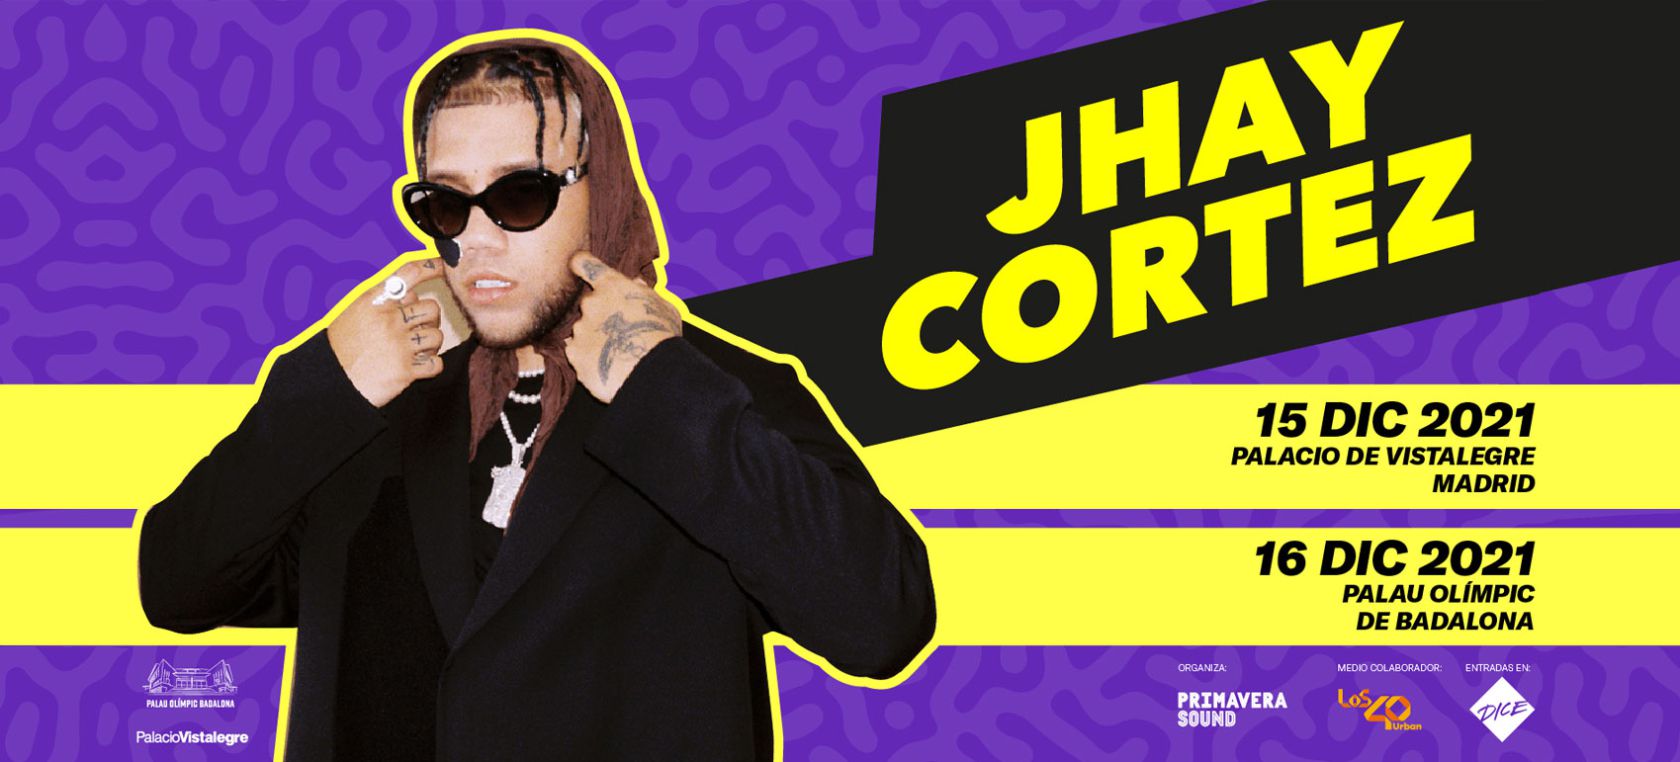 Jhay Cortez, en concierto en Madrid y Barcelona ¡este 2021!